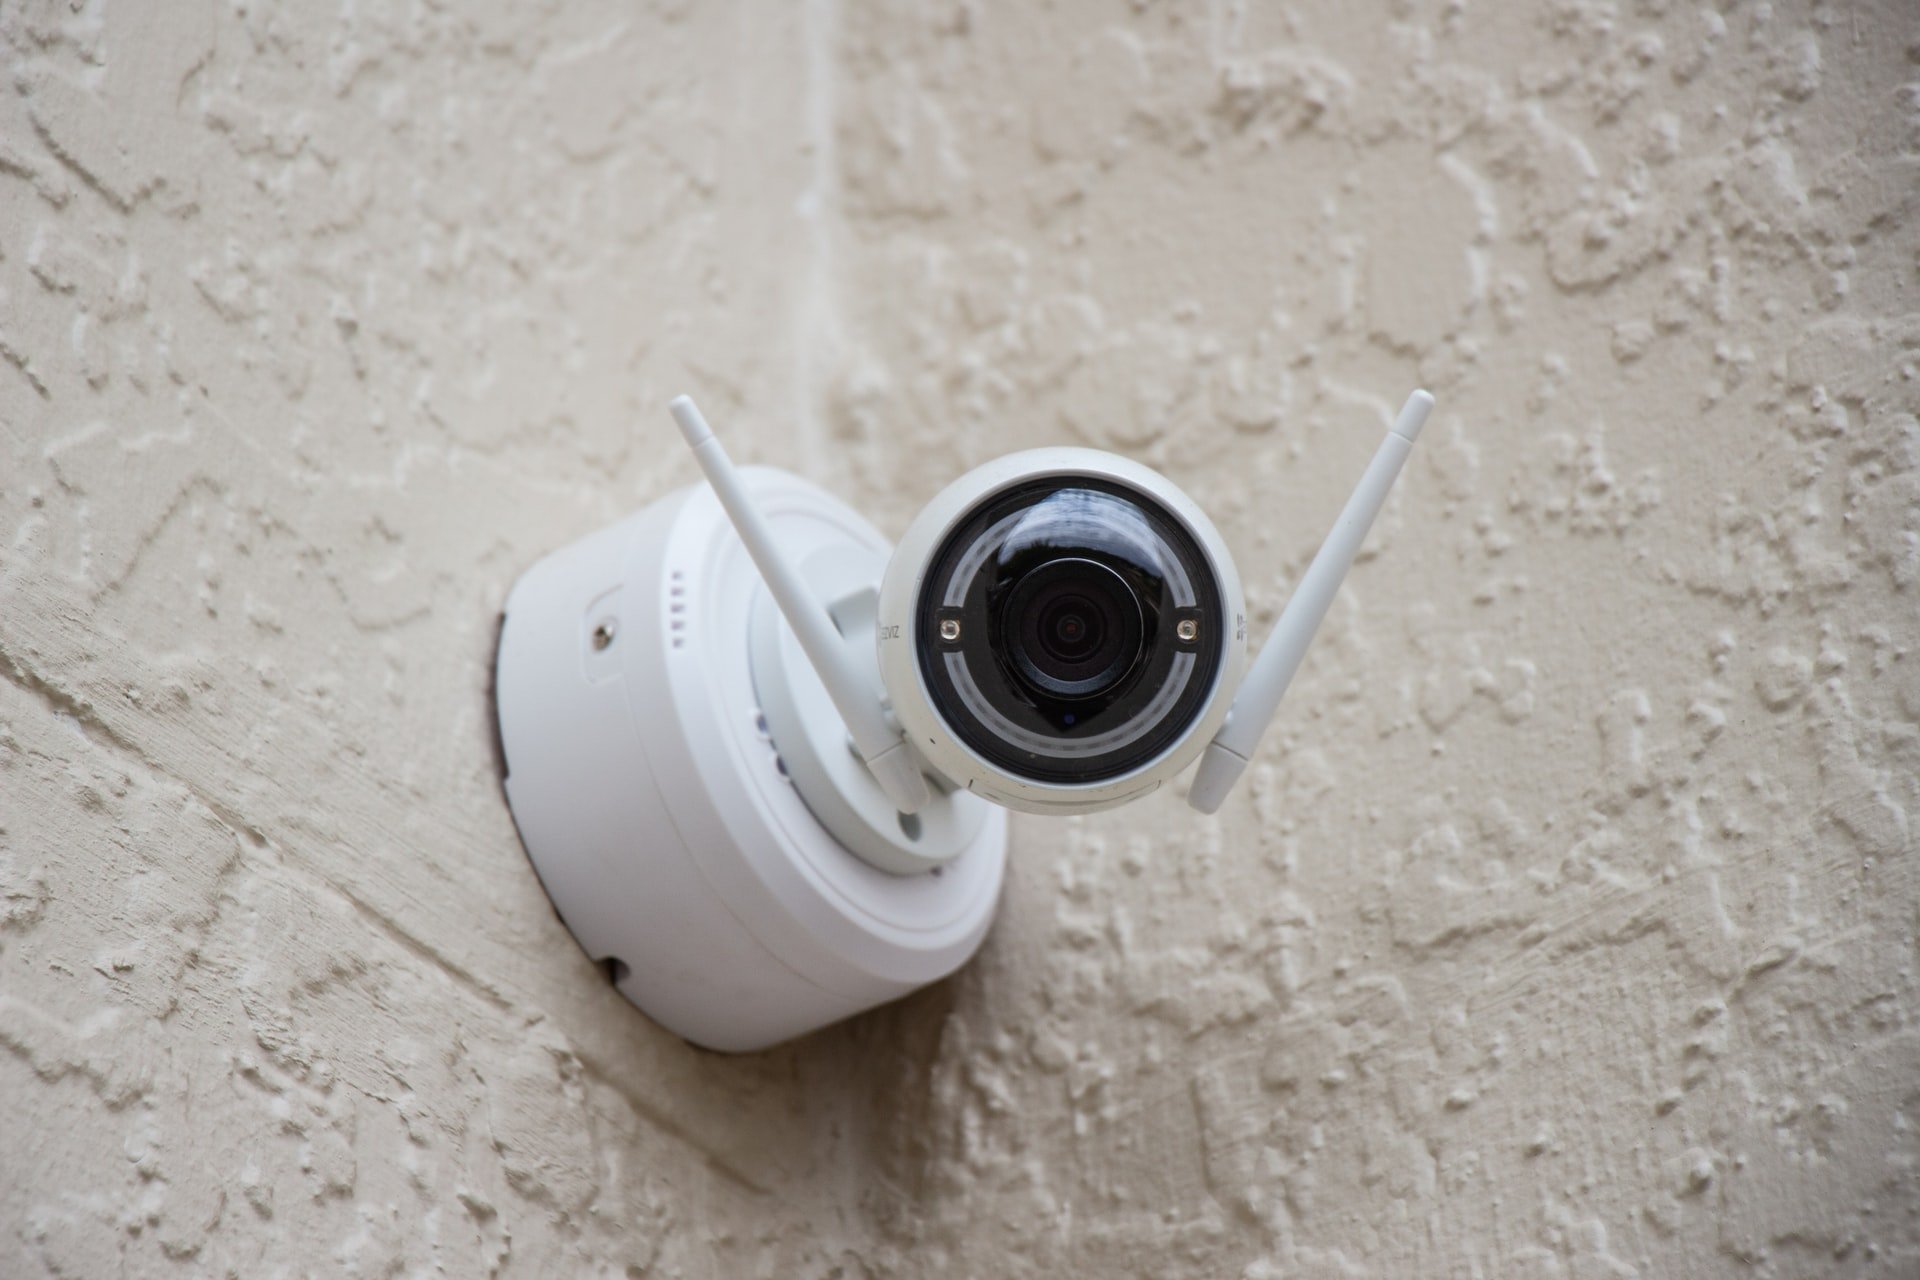 Security camera in OP's room | Source: Unsplash